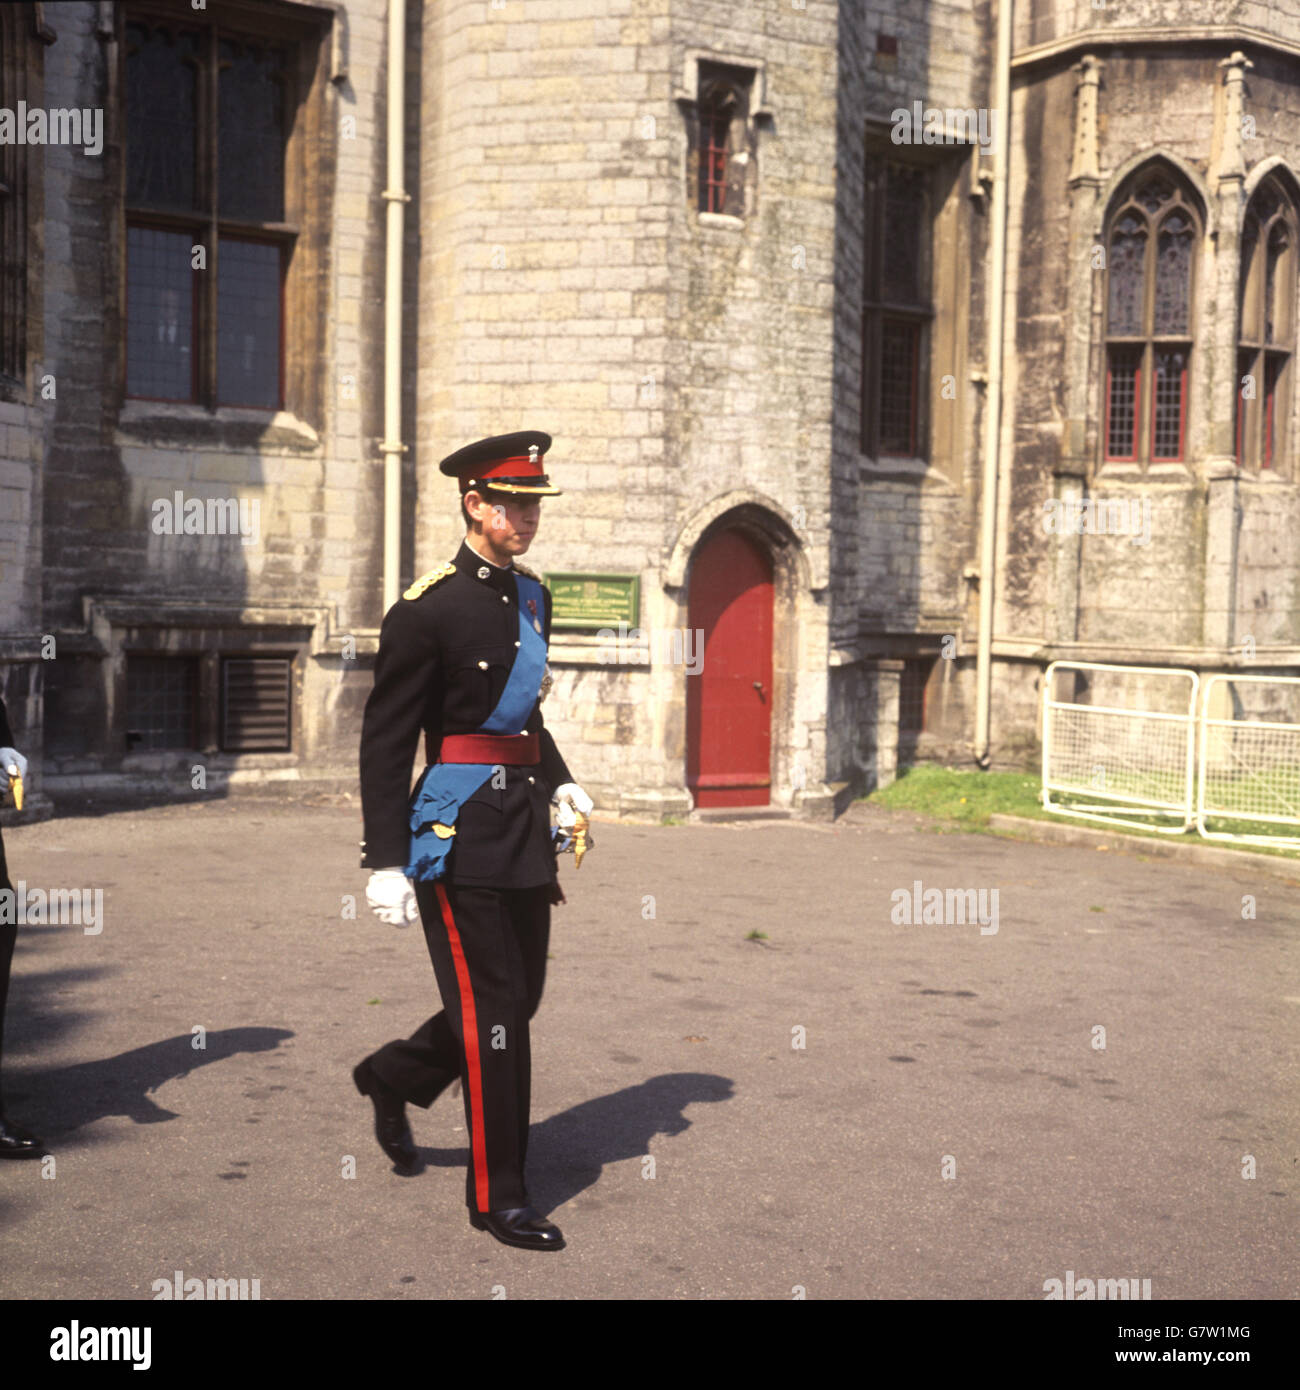 PRINZ CHARLES, in formalem Blues als Oberbefehlshaber des Royal Regiment of wales, Ankunft in Cardiff Castle für die Einweihung des Regiments. Er wird bei seiner Investitur als Prinz von Wales die gleiche Uniform unter seinem Rang tragen. Stockfoto